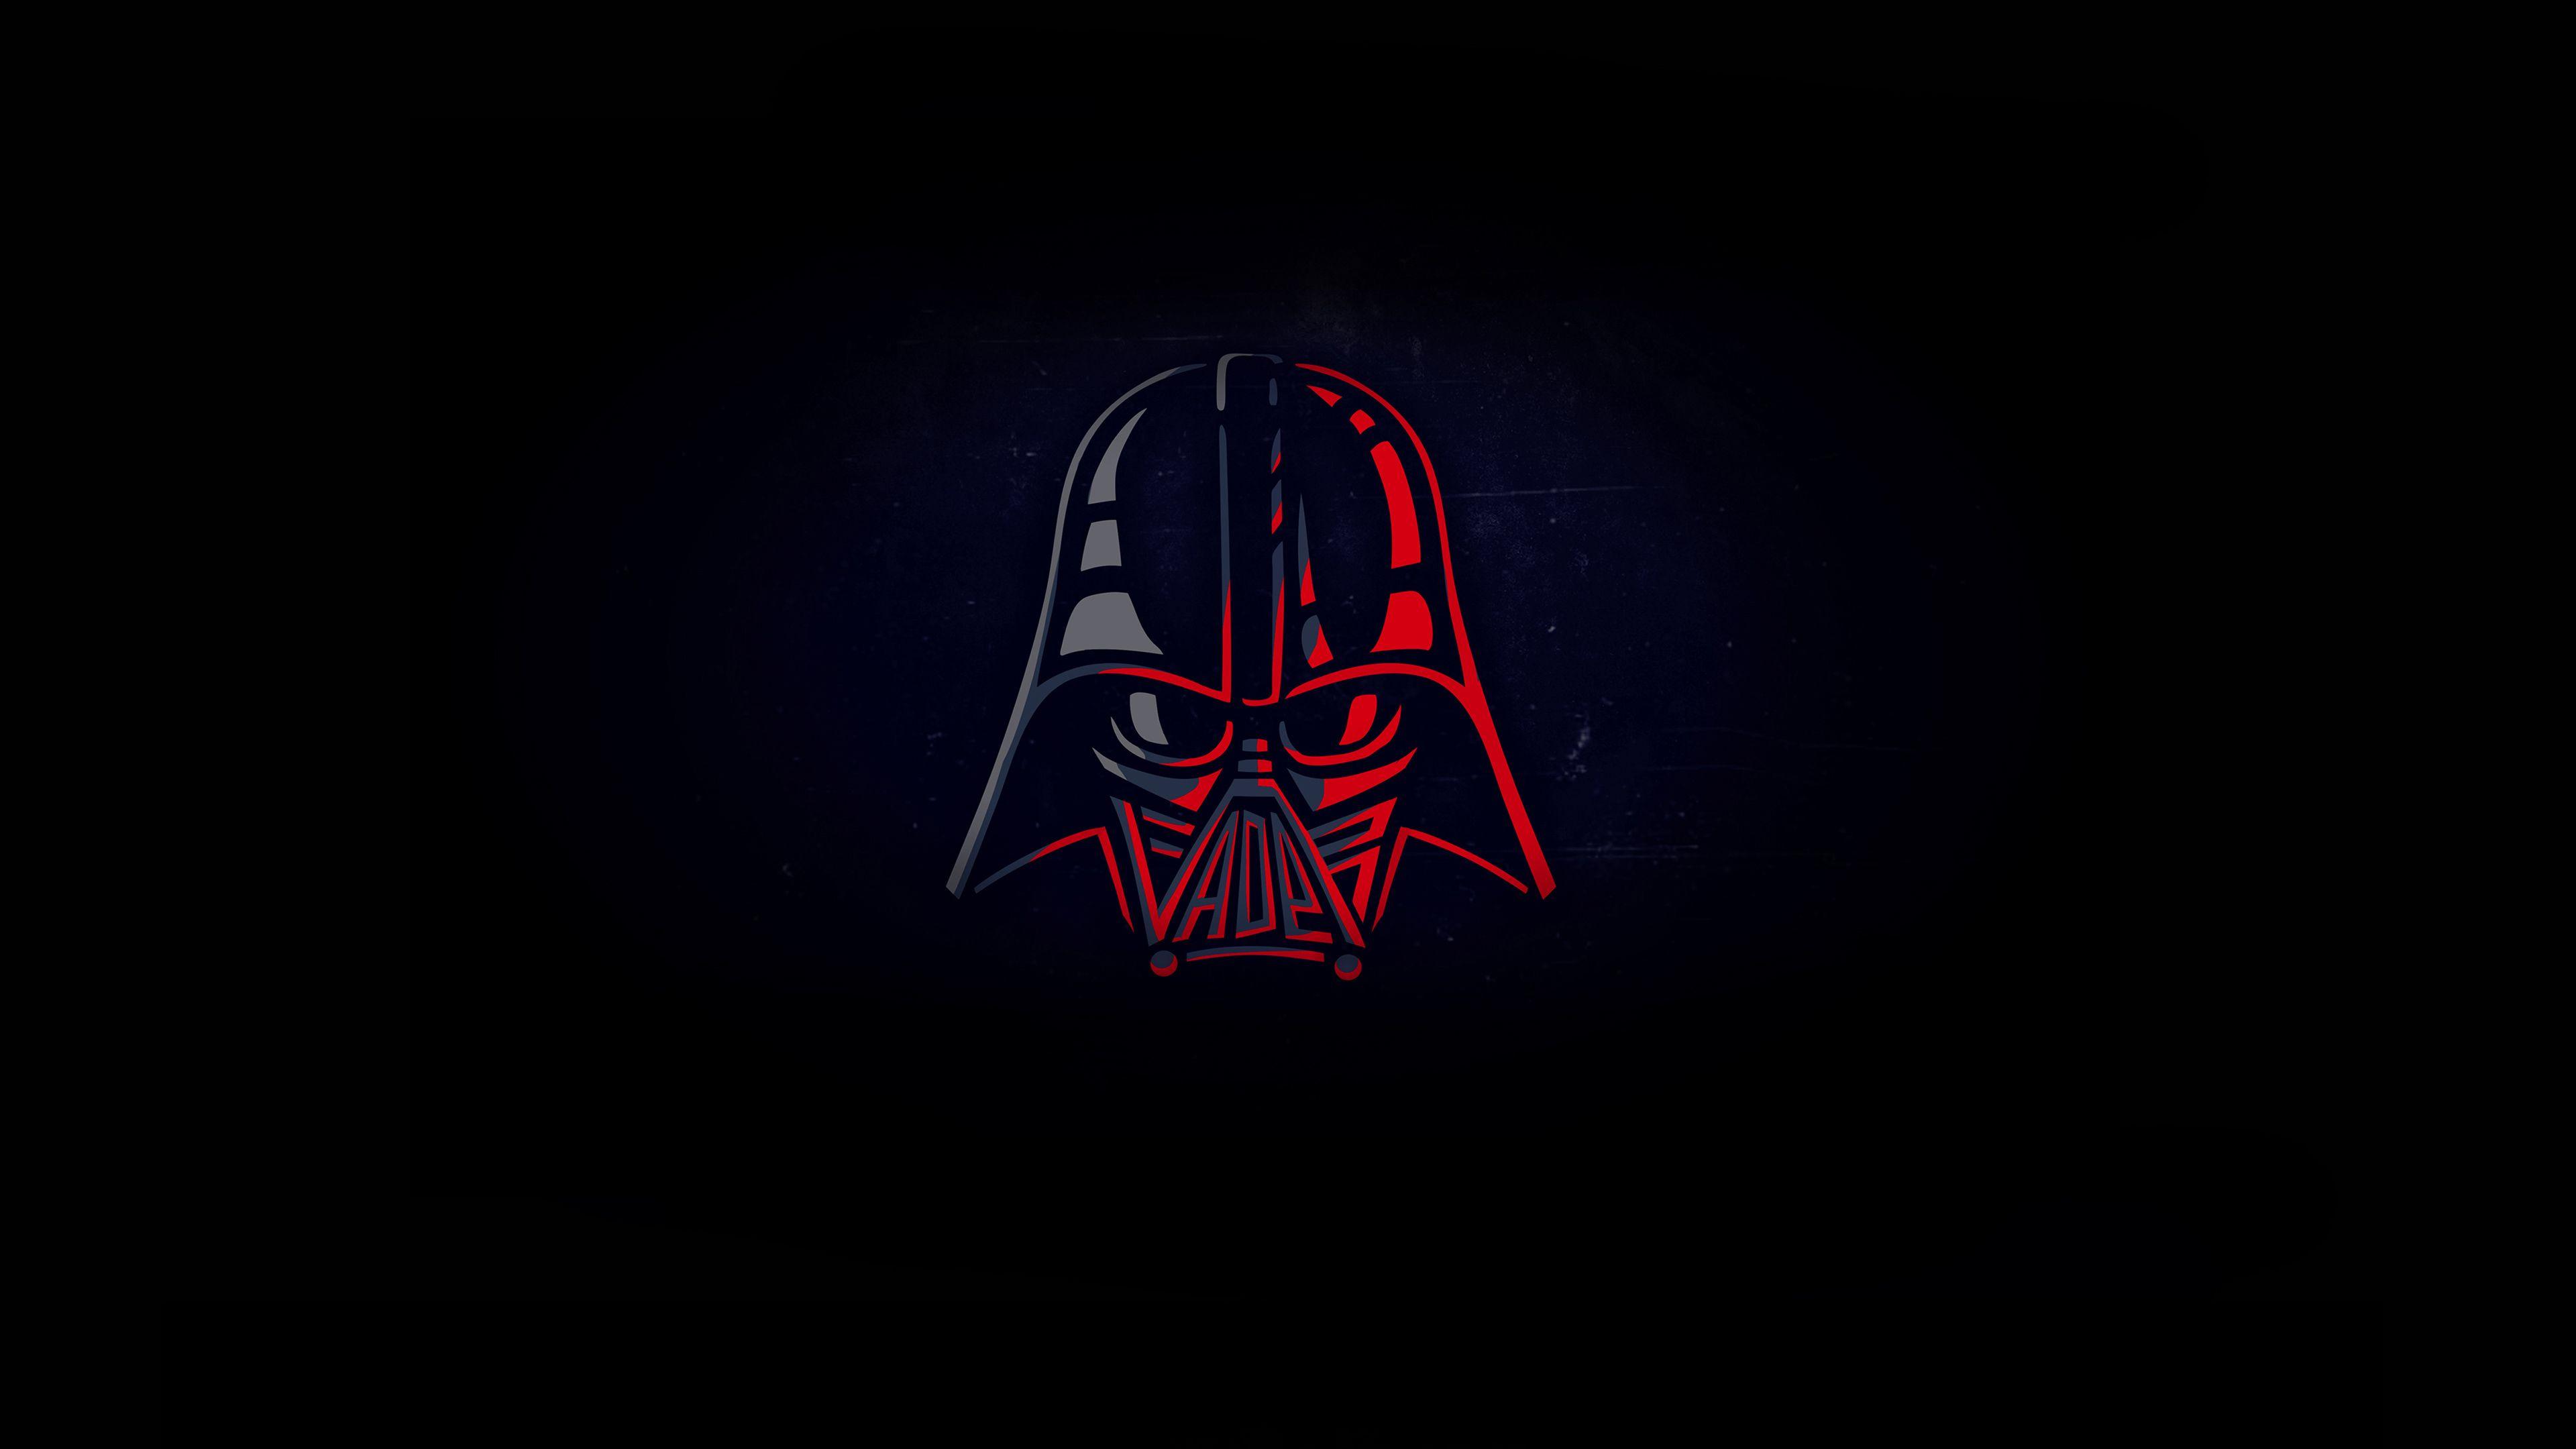 Darth Vader Minimal 4k Star Wars Wallpaper, Minimalist Wallpaper, Minimalism Wallpaper, Hd Wa. Darth Vader Wallpaper, Star Wars Wallpaper, Minimalist Wallpaper